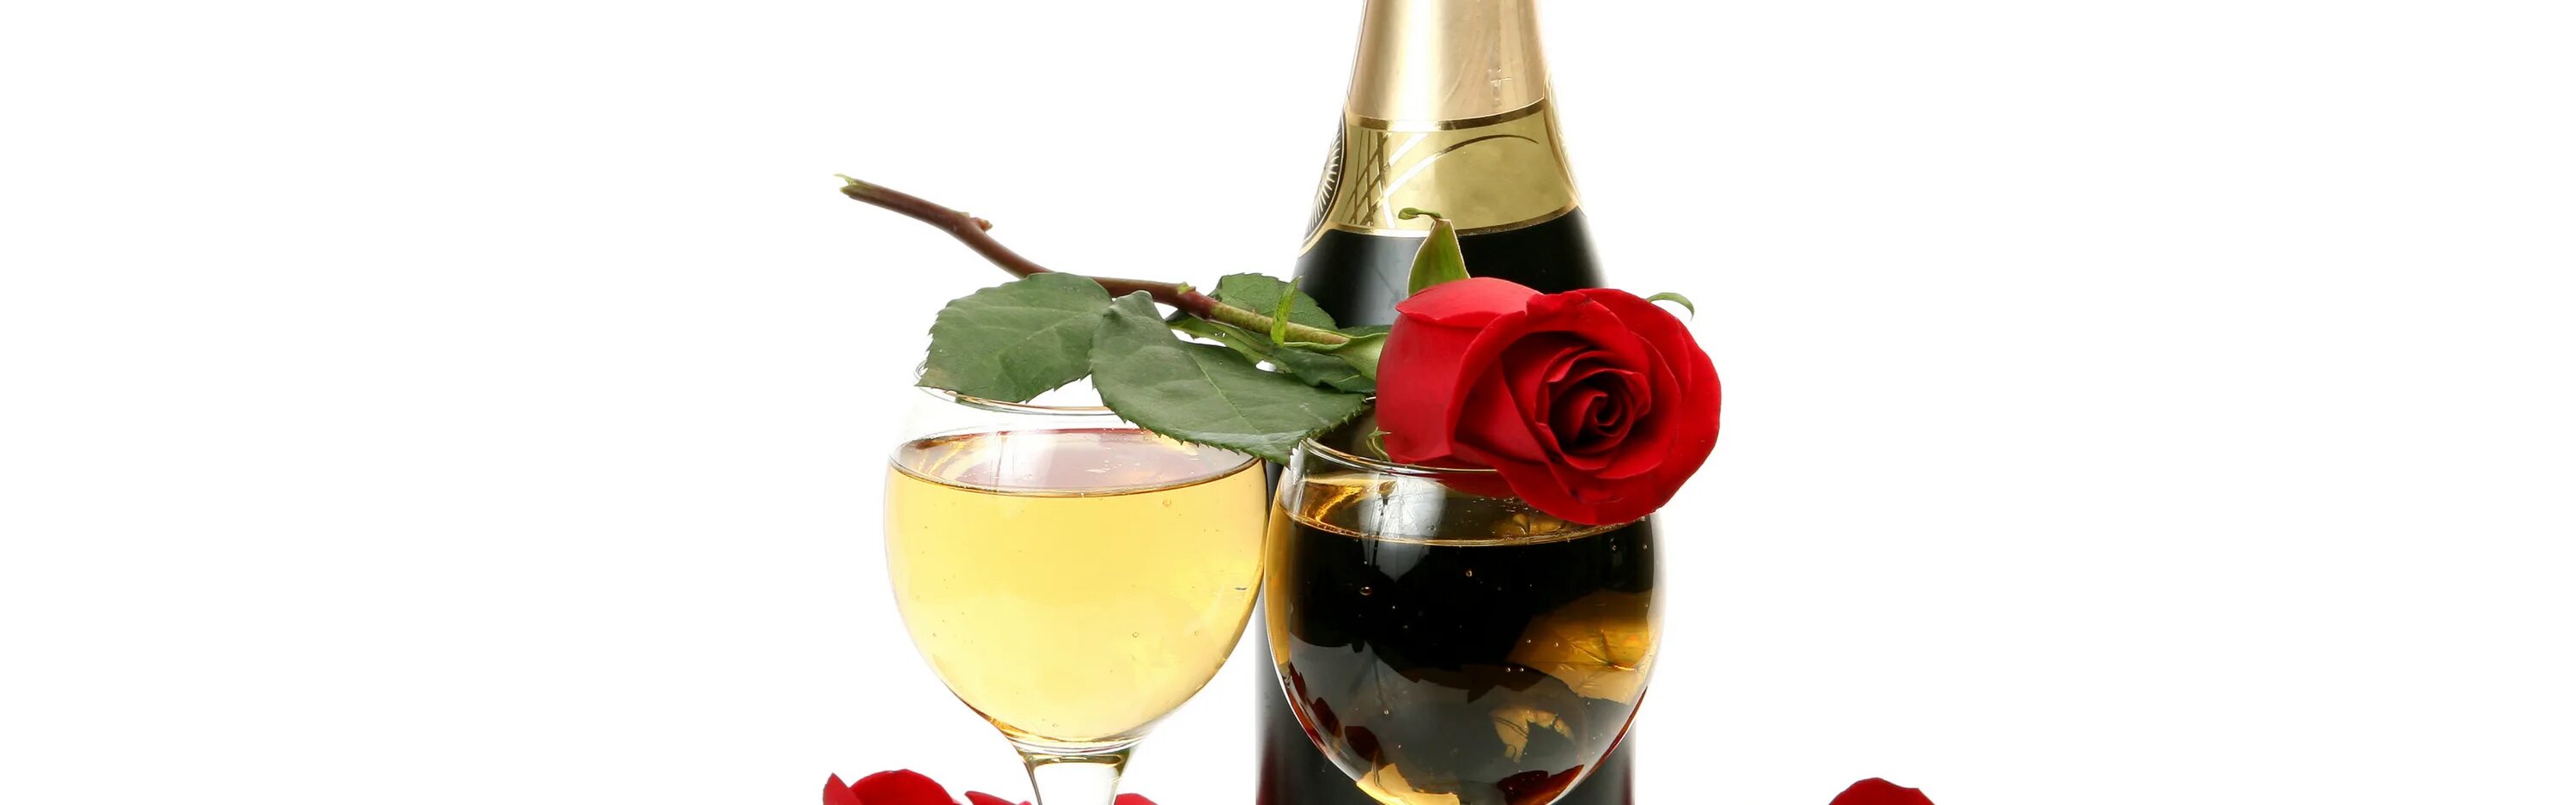 Шампанское и розы 81 глава на русском